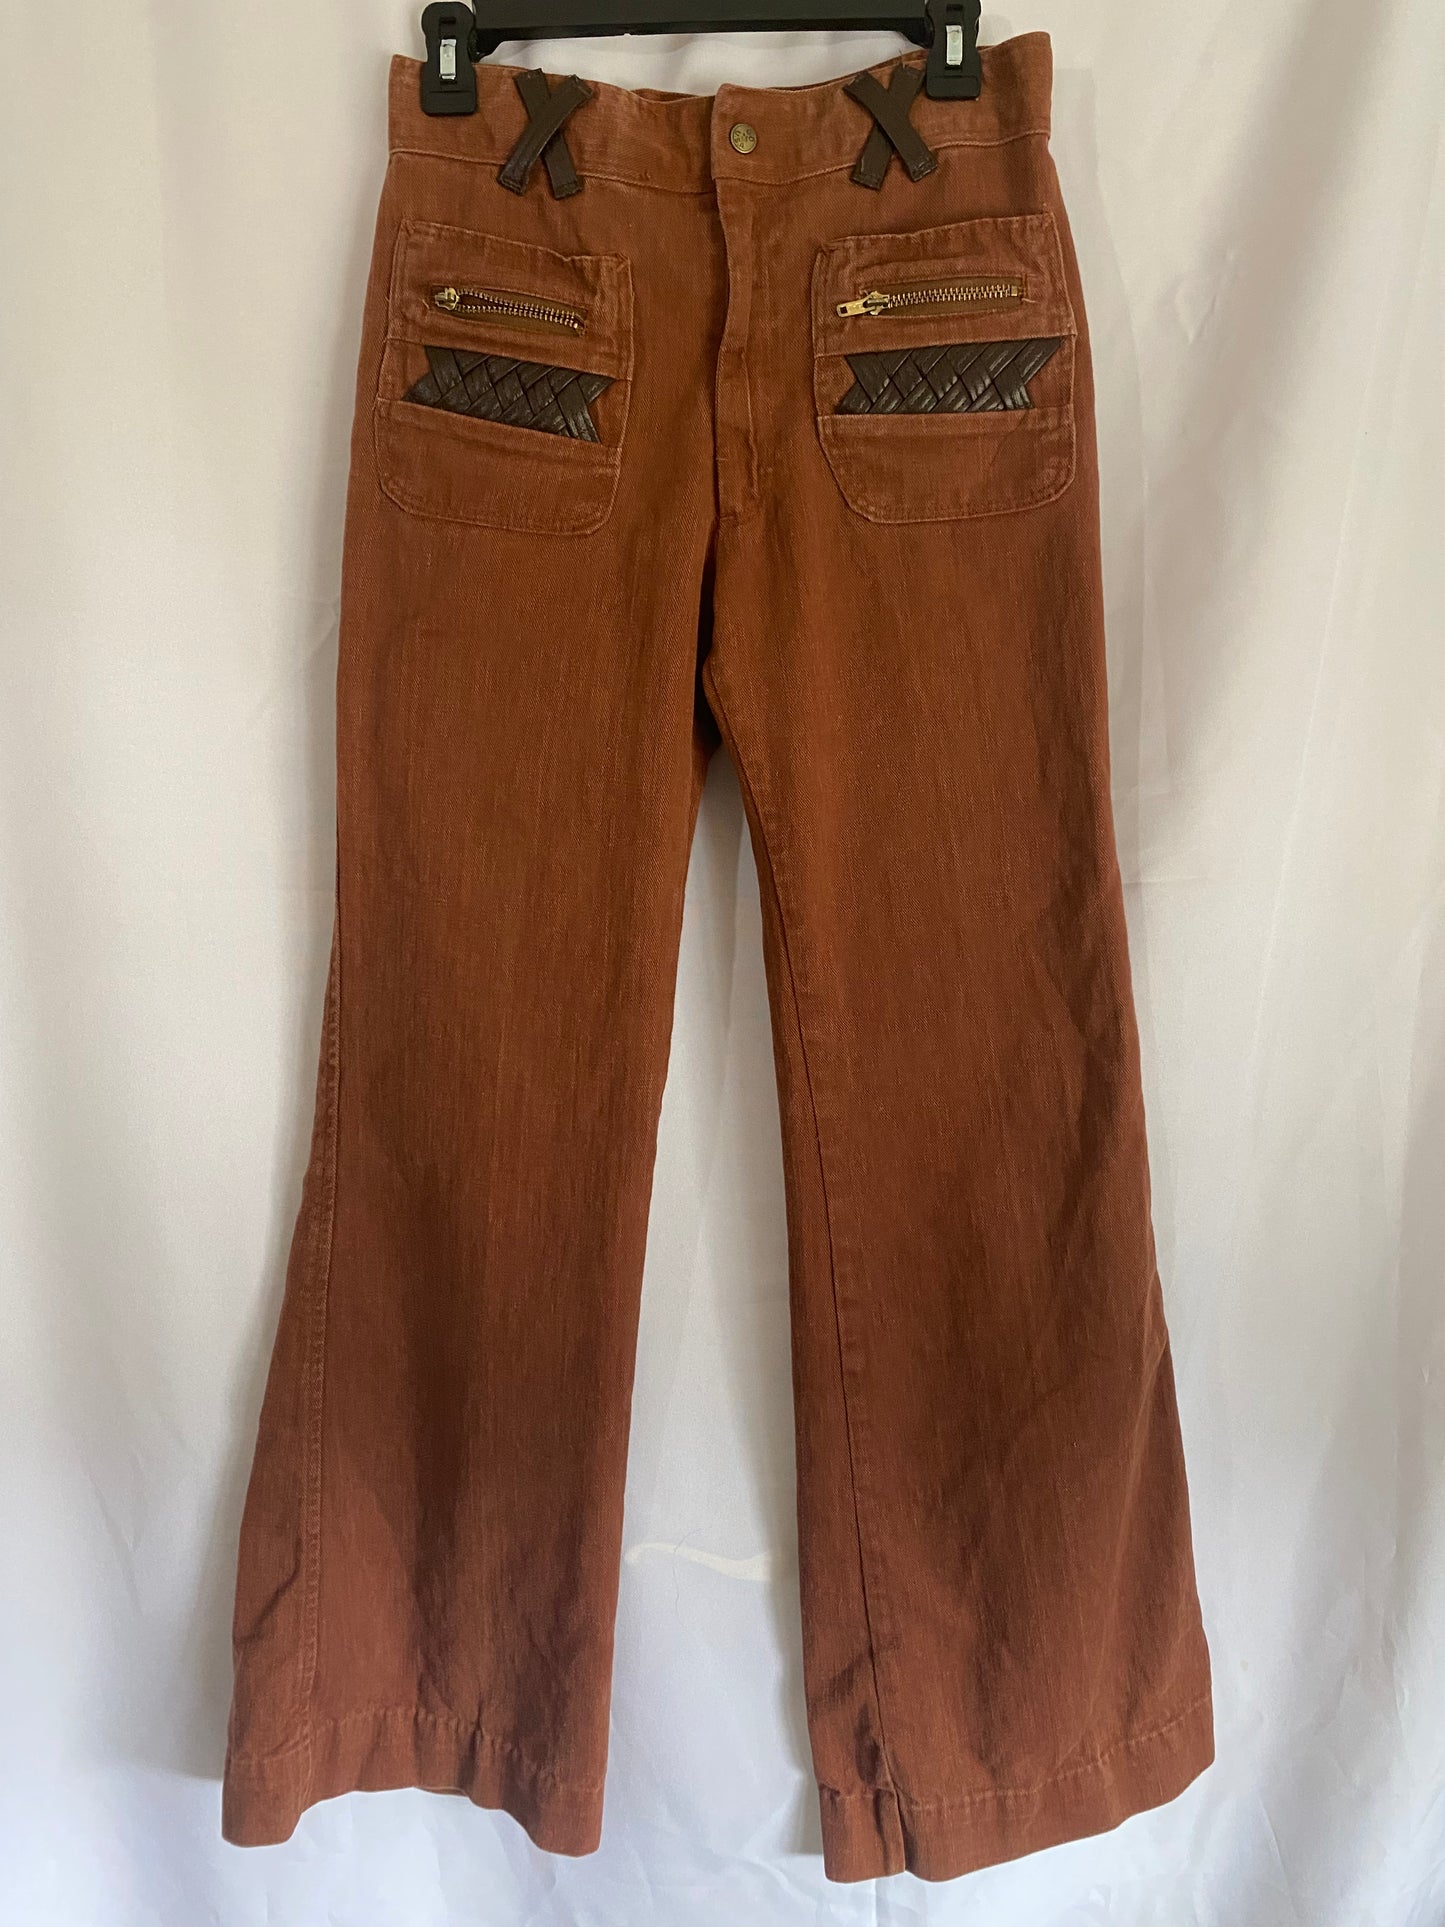 Tan/Brown Bellbottom Pants